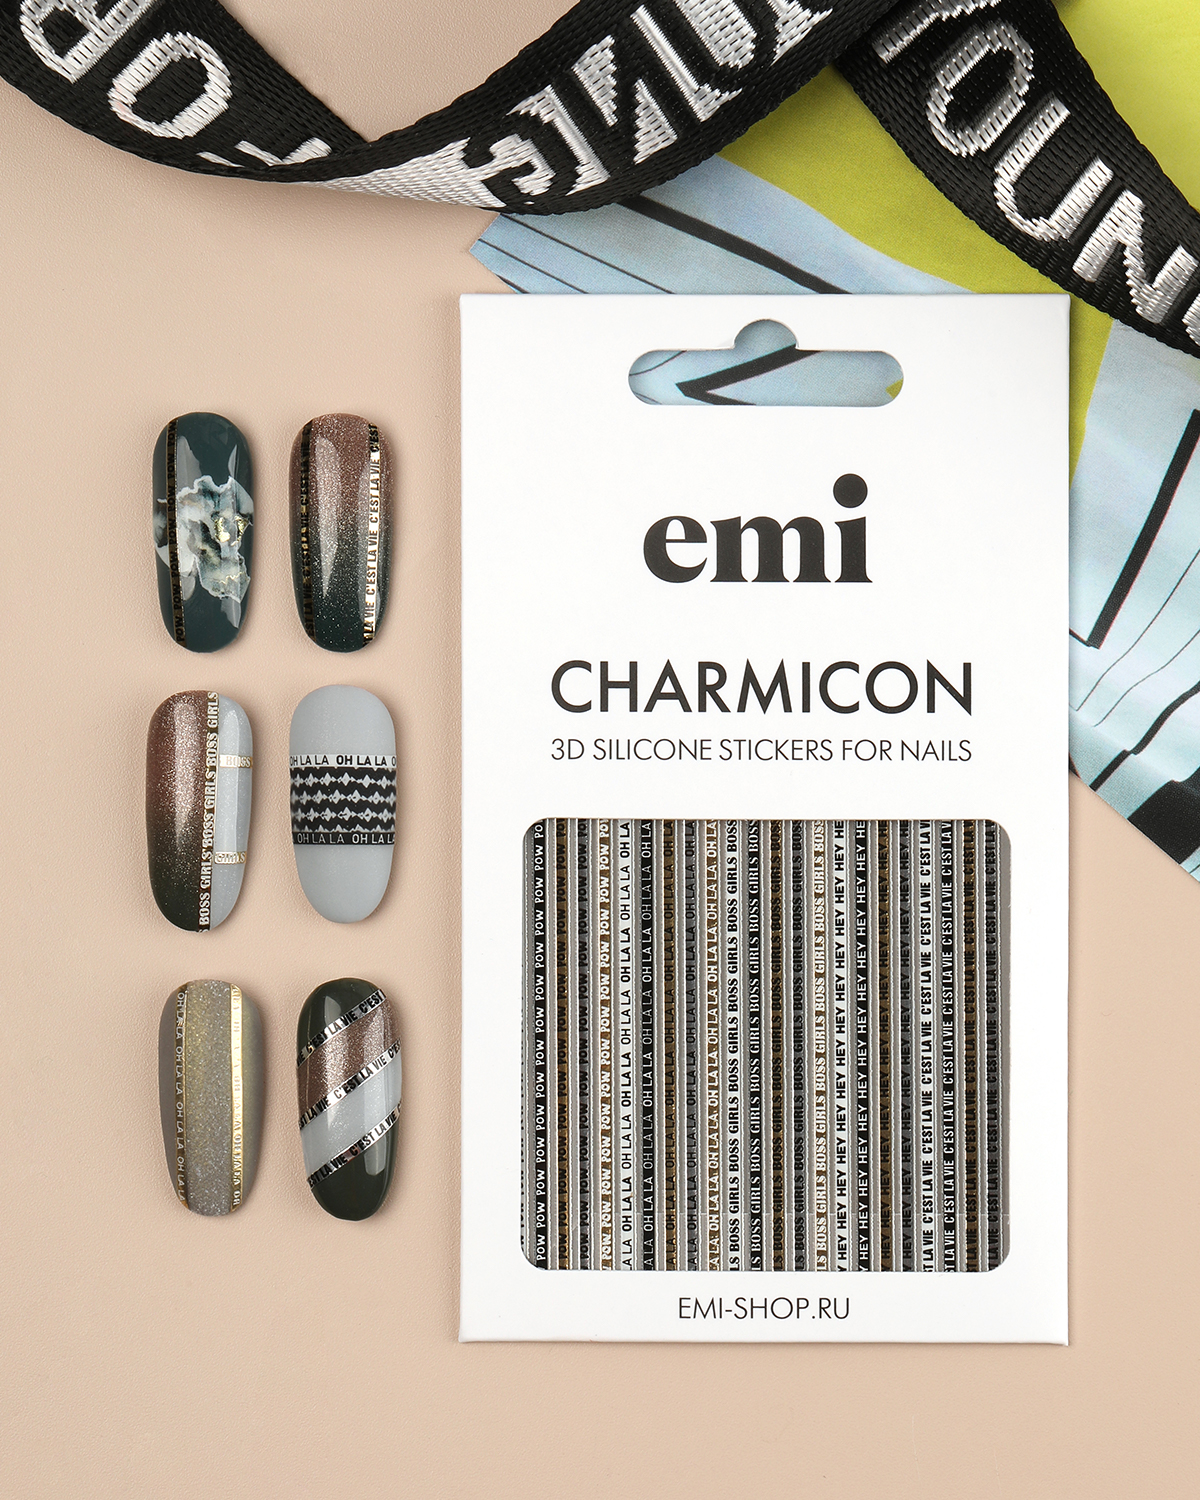 Объемные наклейки для дизайна ногтей EMi Charmicon 3D Silicone Stickers №244 Oh la la объемные наклейки для ногтей emi charmicon 3d silicone stickers 233 путешествия 2